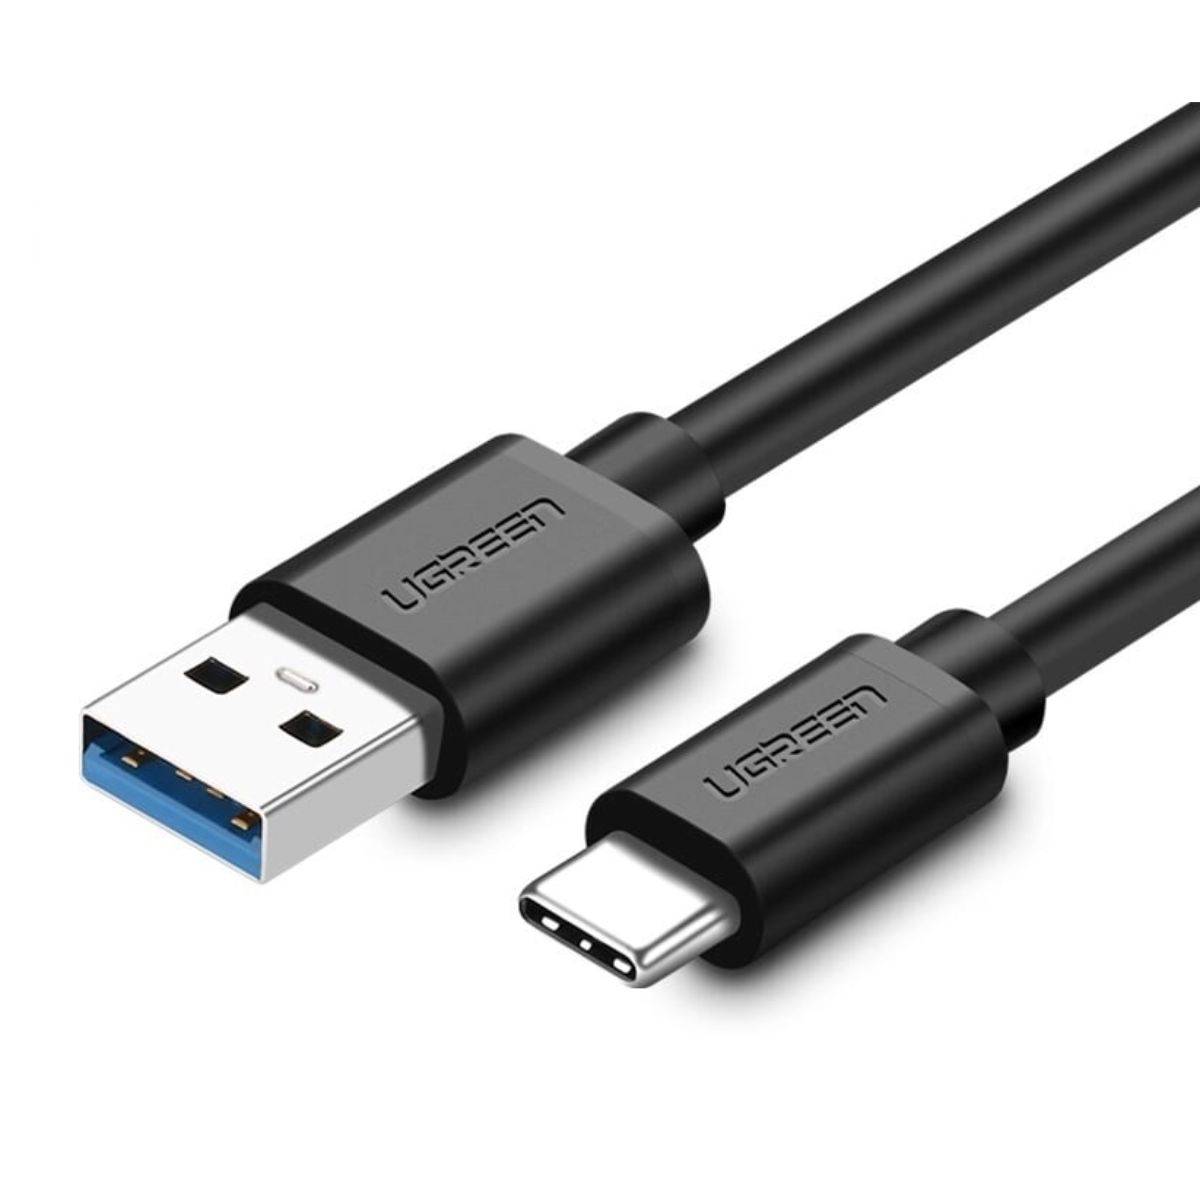 Cáp sạc nhanh USB 3.0 sang USB type C Ugreen US184, 20881 chiều dài 50cm, Hỗ trợ sạc nhanh 3A